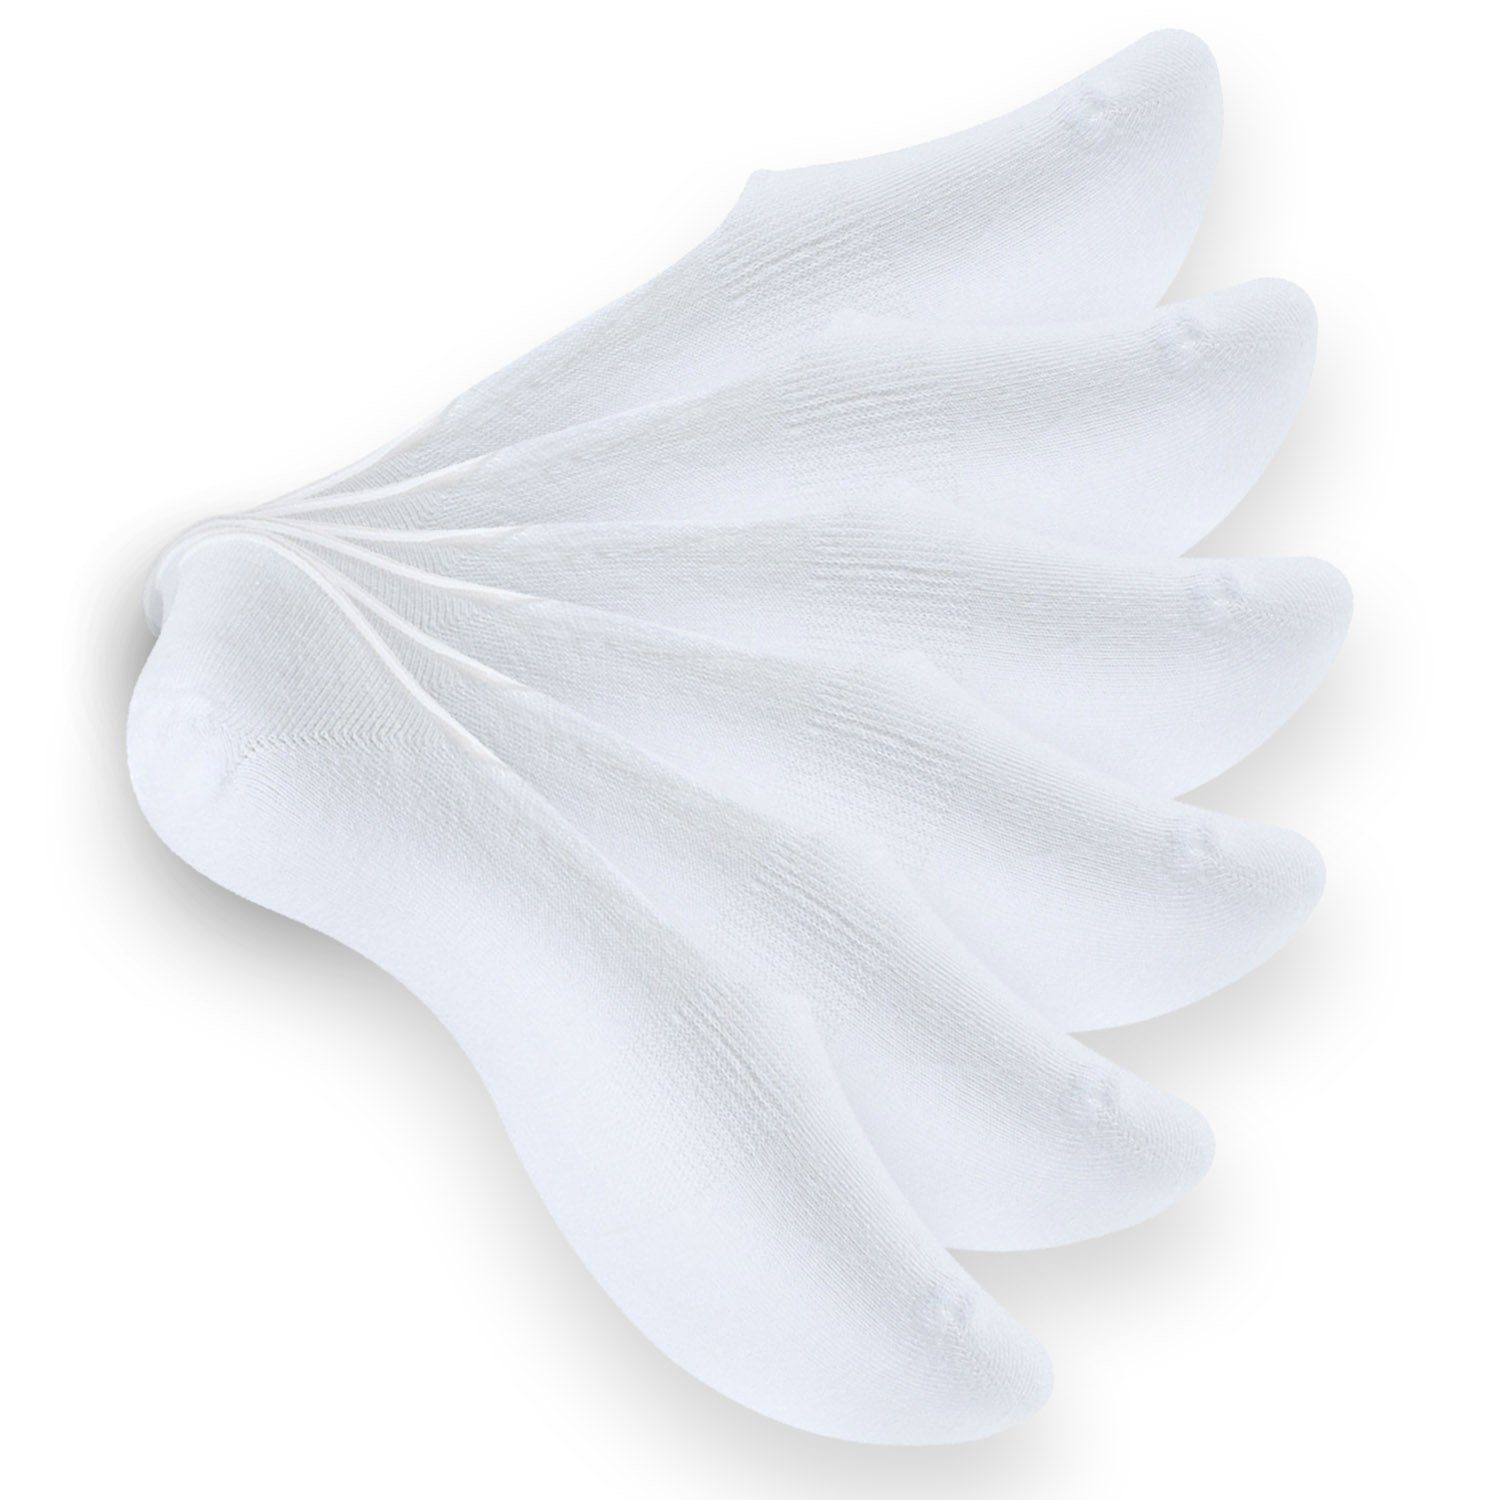 & Damen mit unsichtbare Silikonp Unisex Reslad Füßlinge weiß (6xPaar) Unsichtbare Reslad (6-Paar) Füßlinge Herren Sneaker rutschfeste Socken